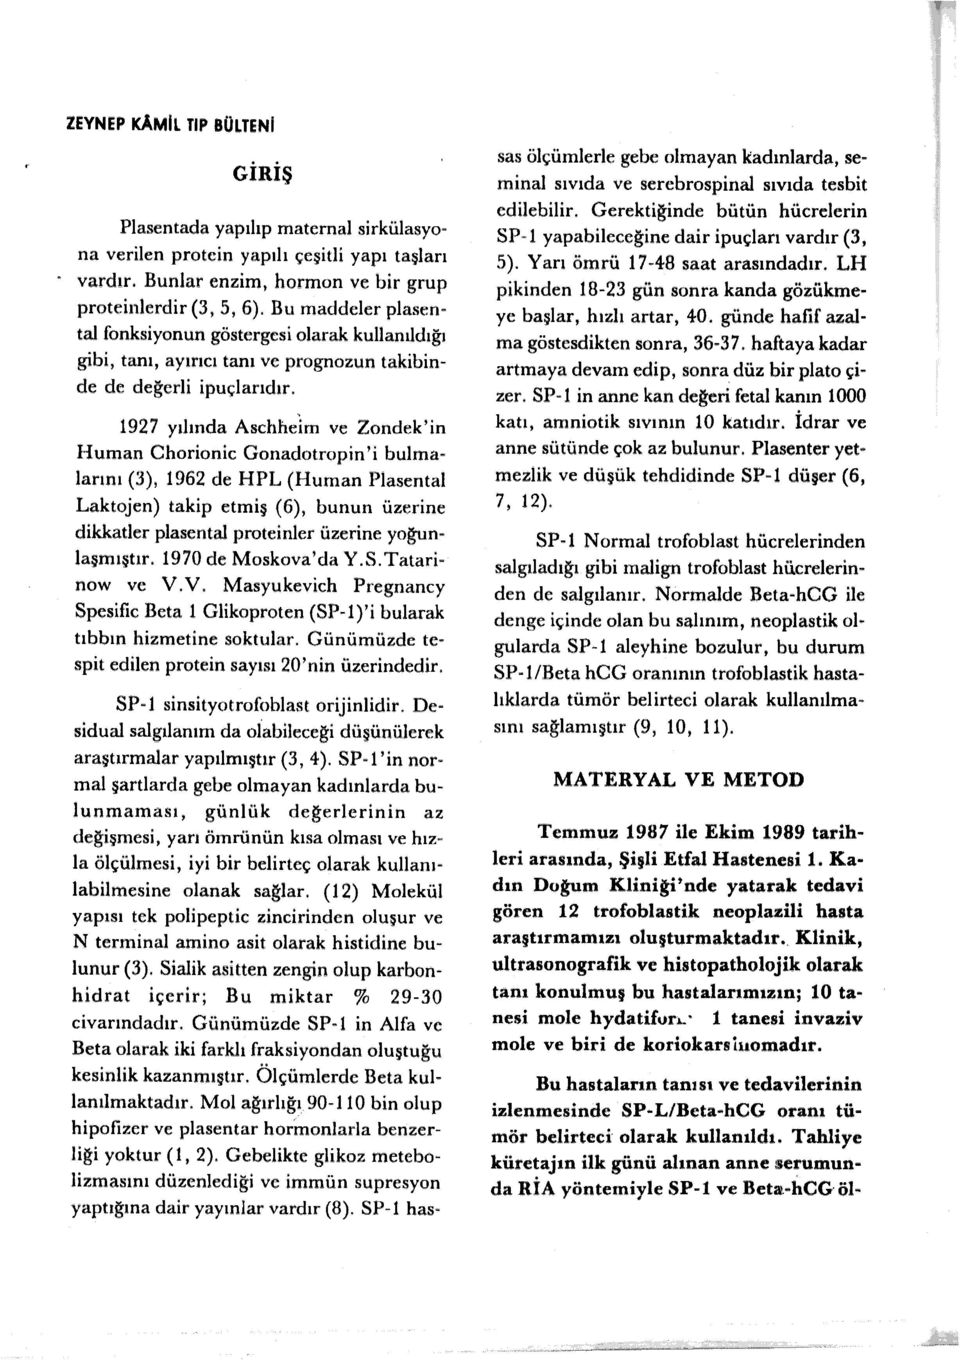 1927 yılında Aschhelm ve Zondek'in Human Chorionic Gonadotropin' i bulmalarını (3), 1962 de HPL (Human Plasenta!